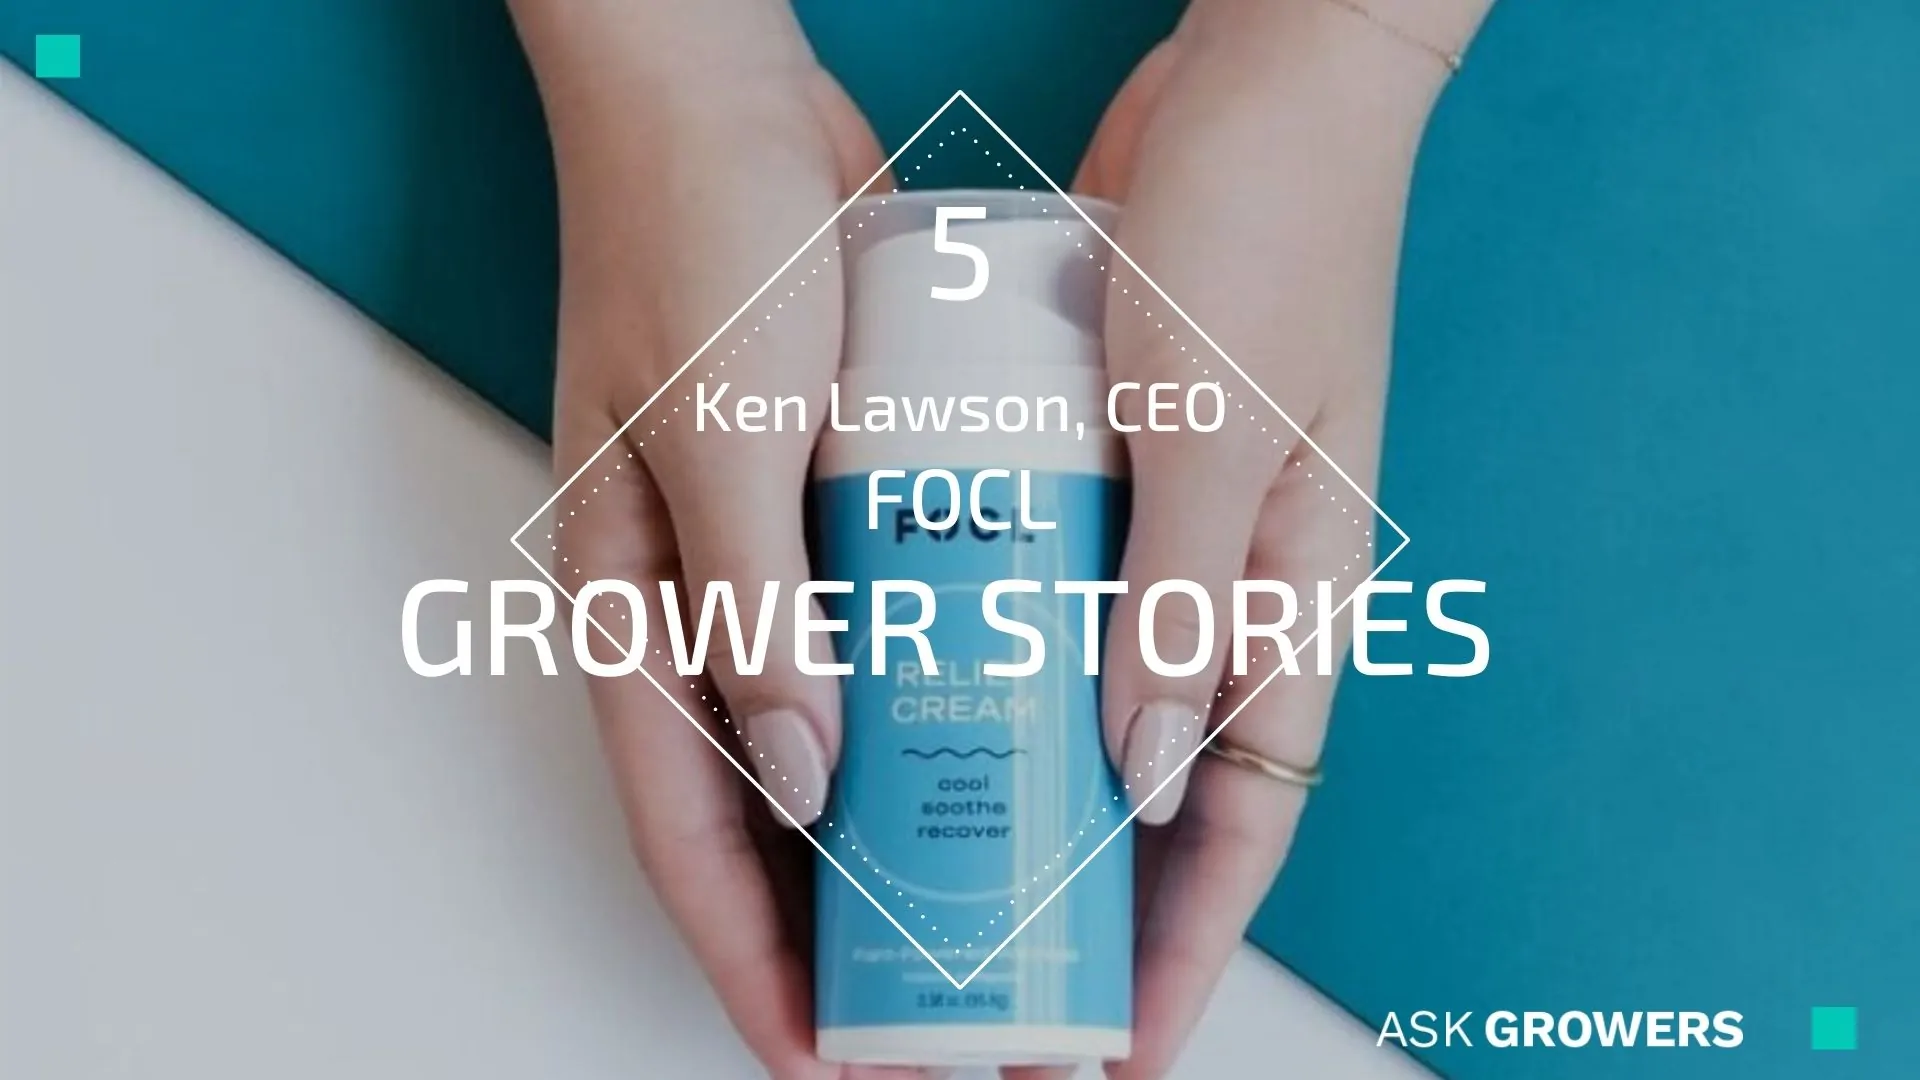 Grower Stories #5: Ken Lawson